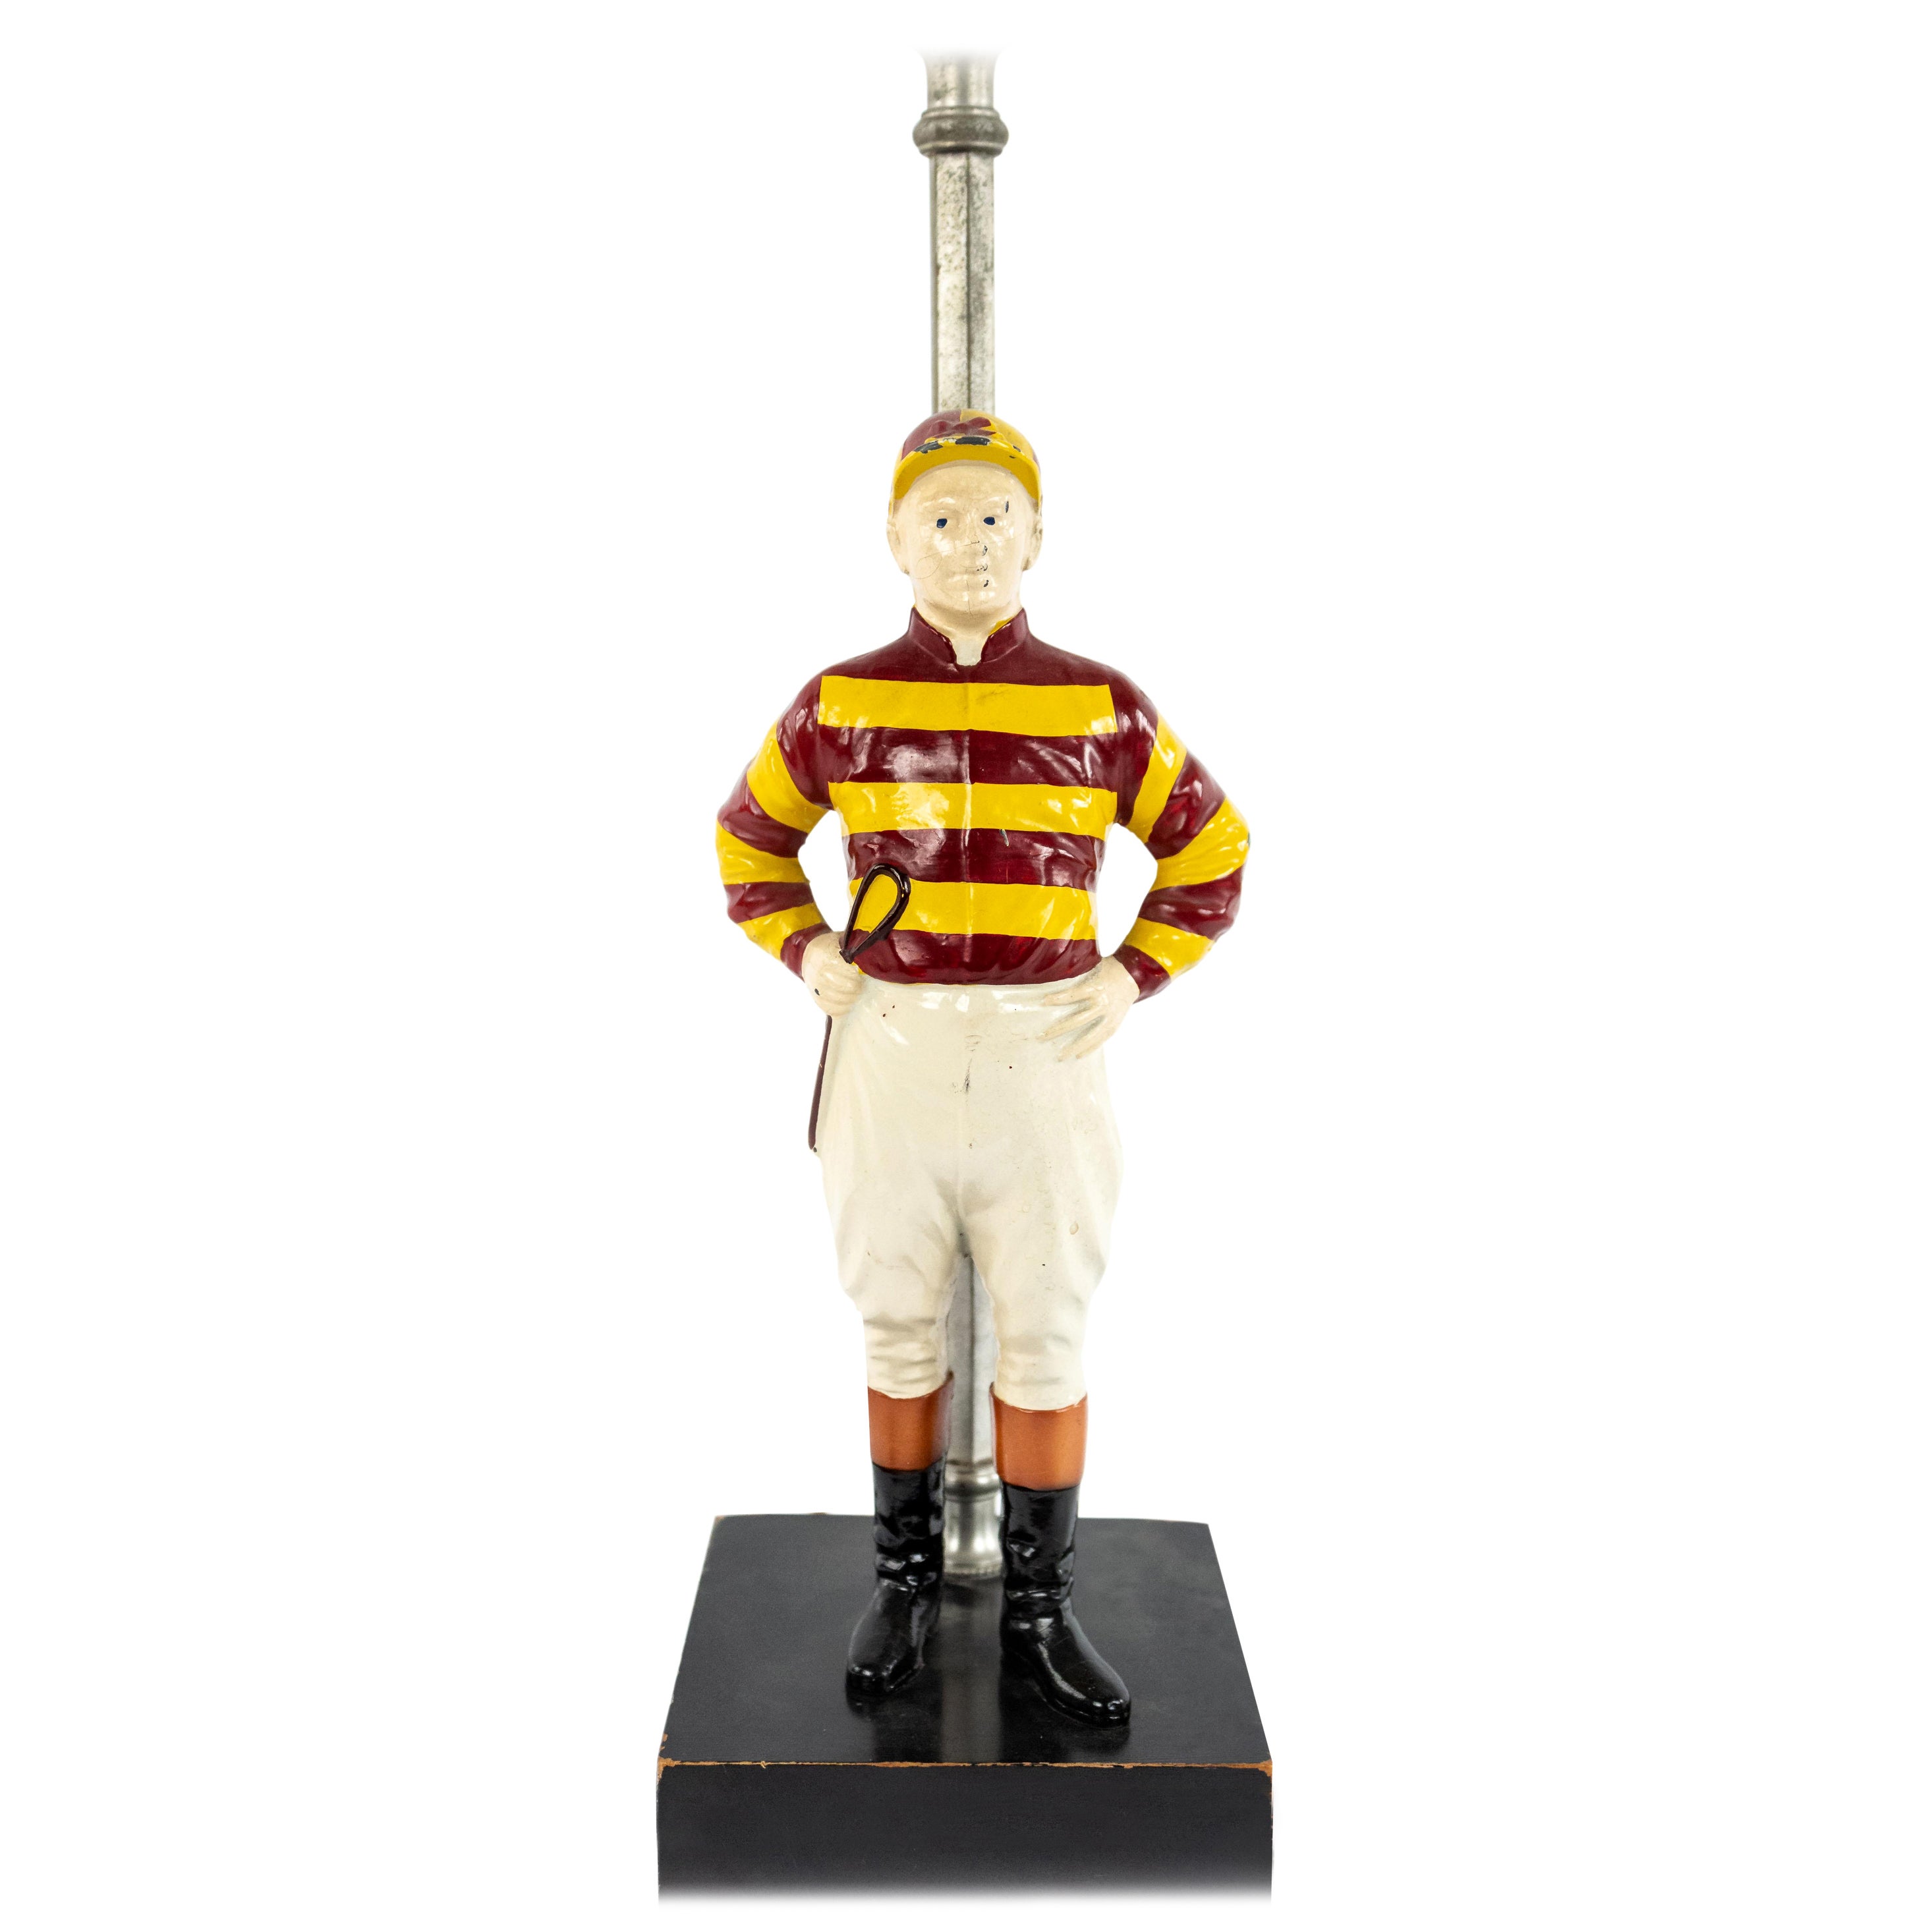 American Mid-Century Jockey Figure Table Lamp